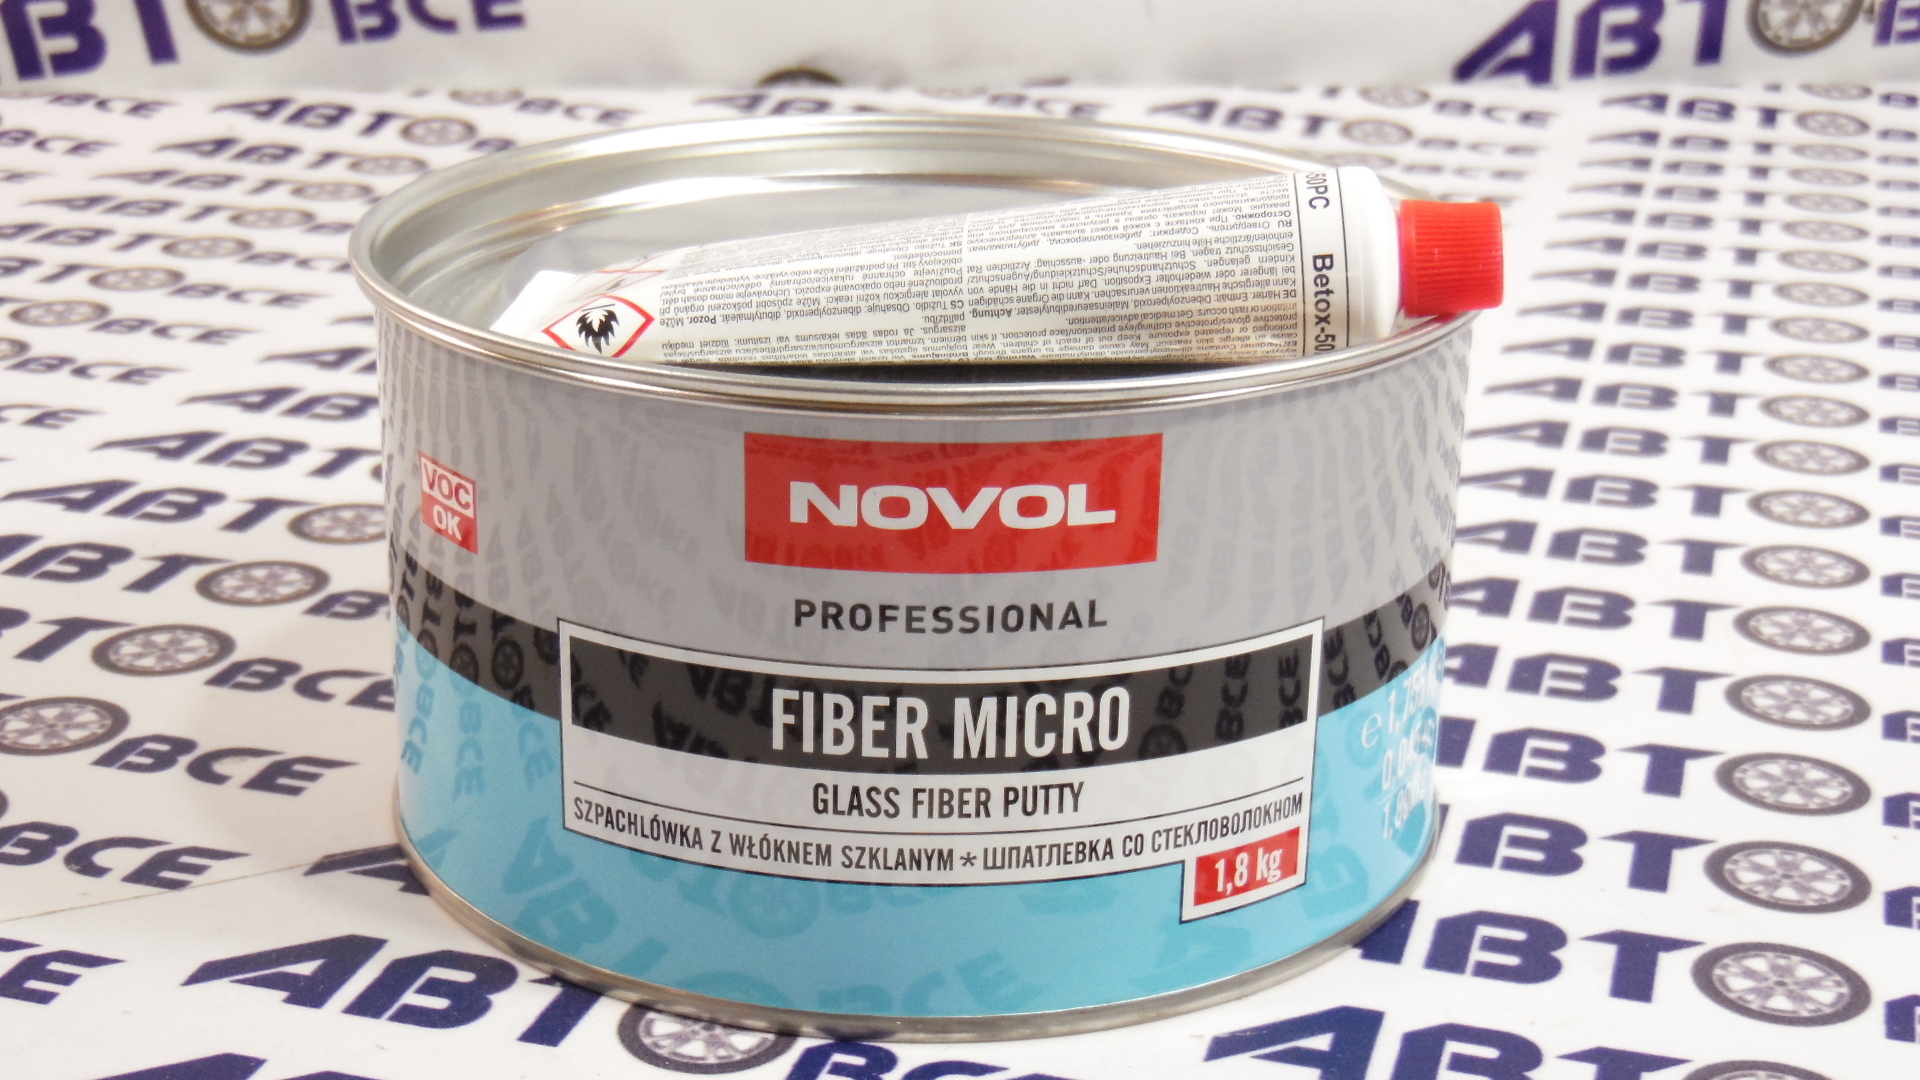 Шпатлевка со стекло улучшенная 1,8 кг (Micro fiber) NOVOL